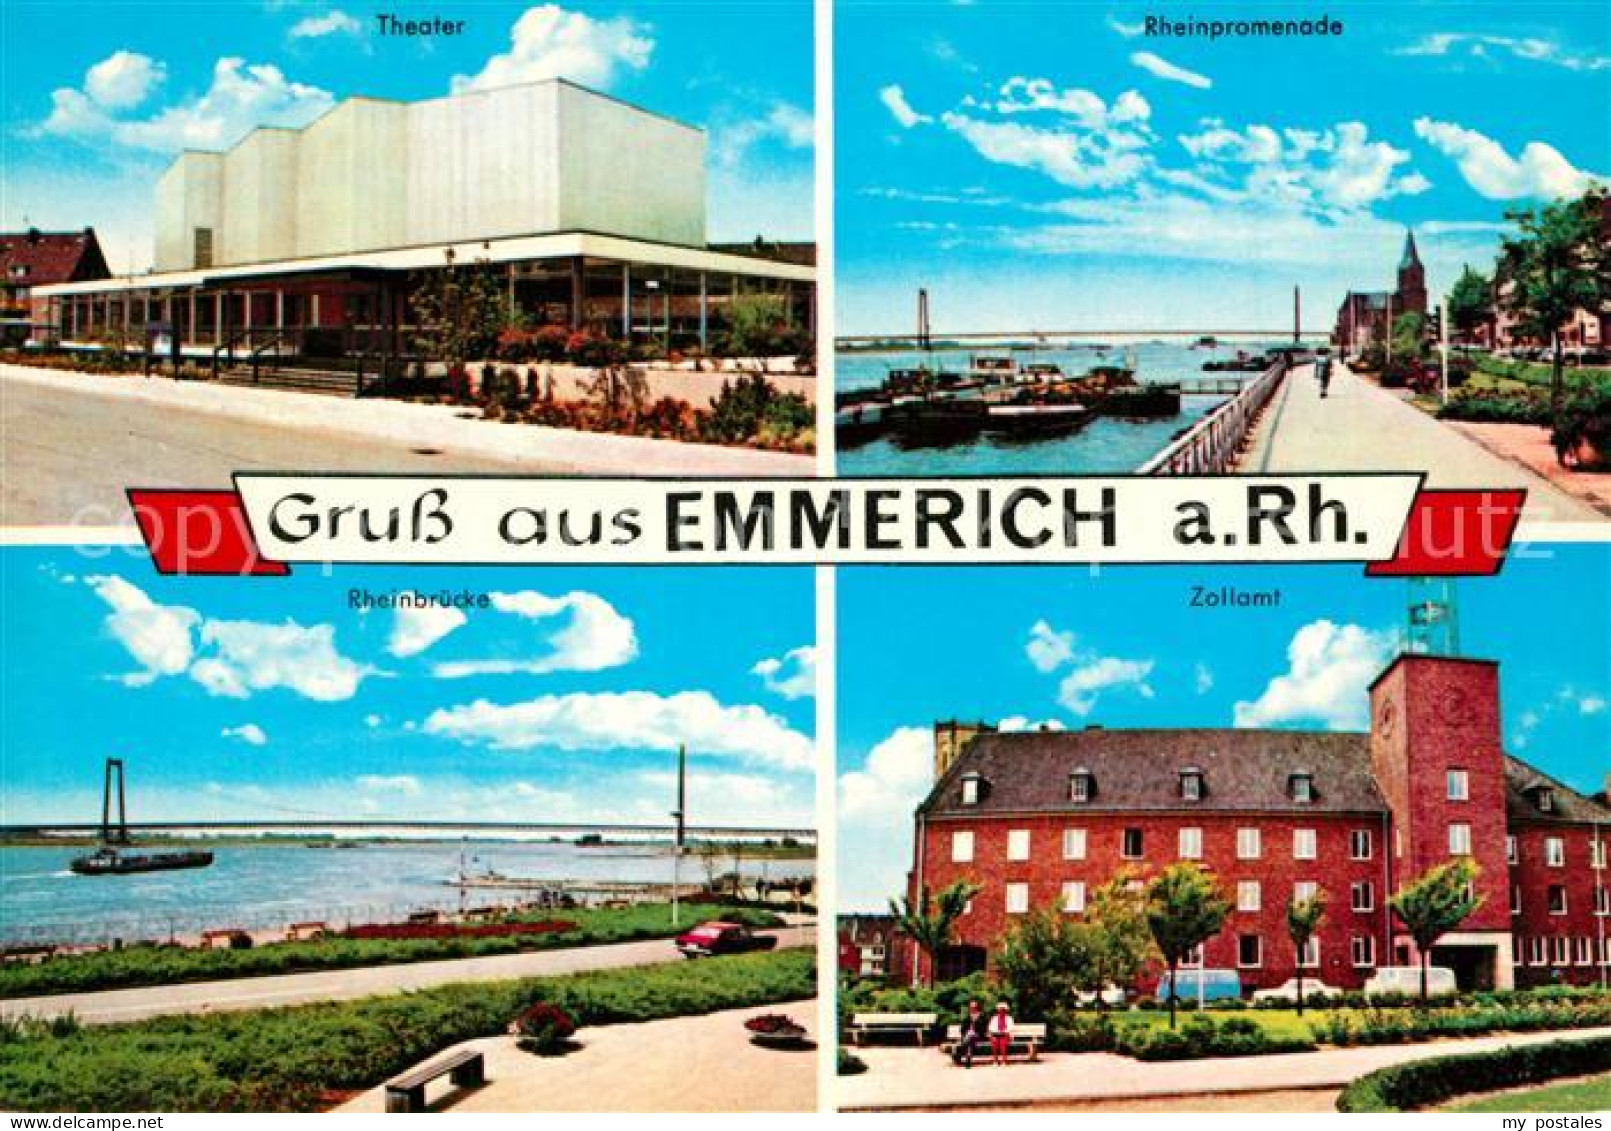 73306633 Emmerich Rhein Theater Rheinpromenade Rheinbruecke Zollamt Emmerich Rhe - Emmerich